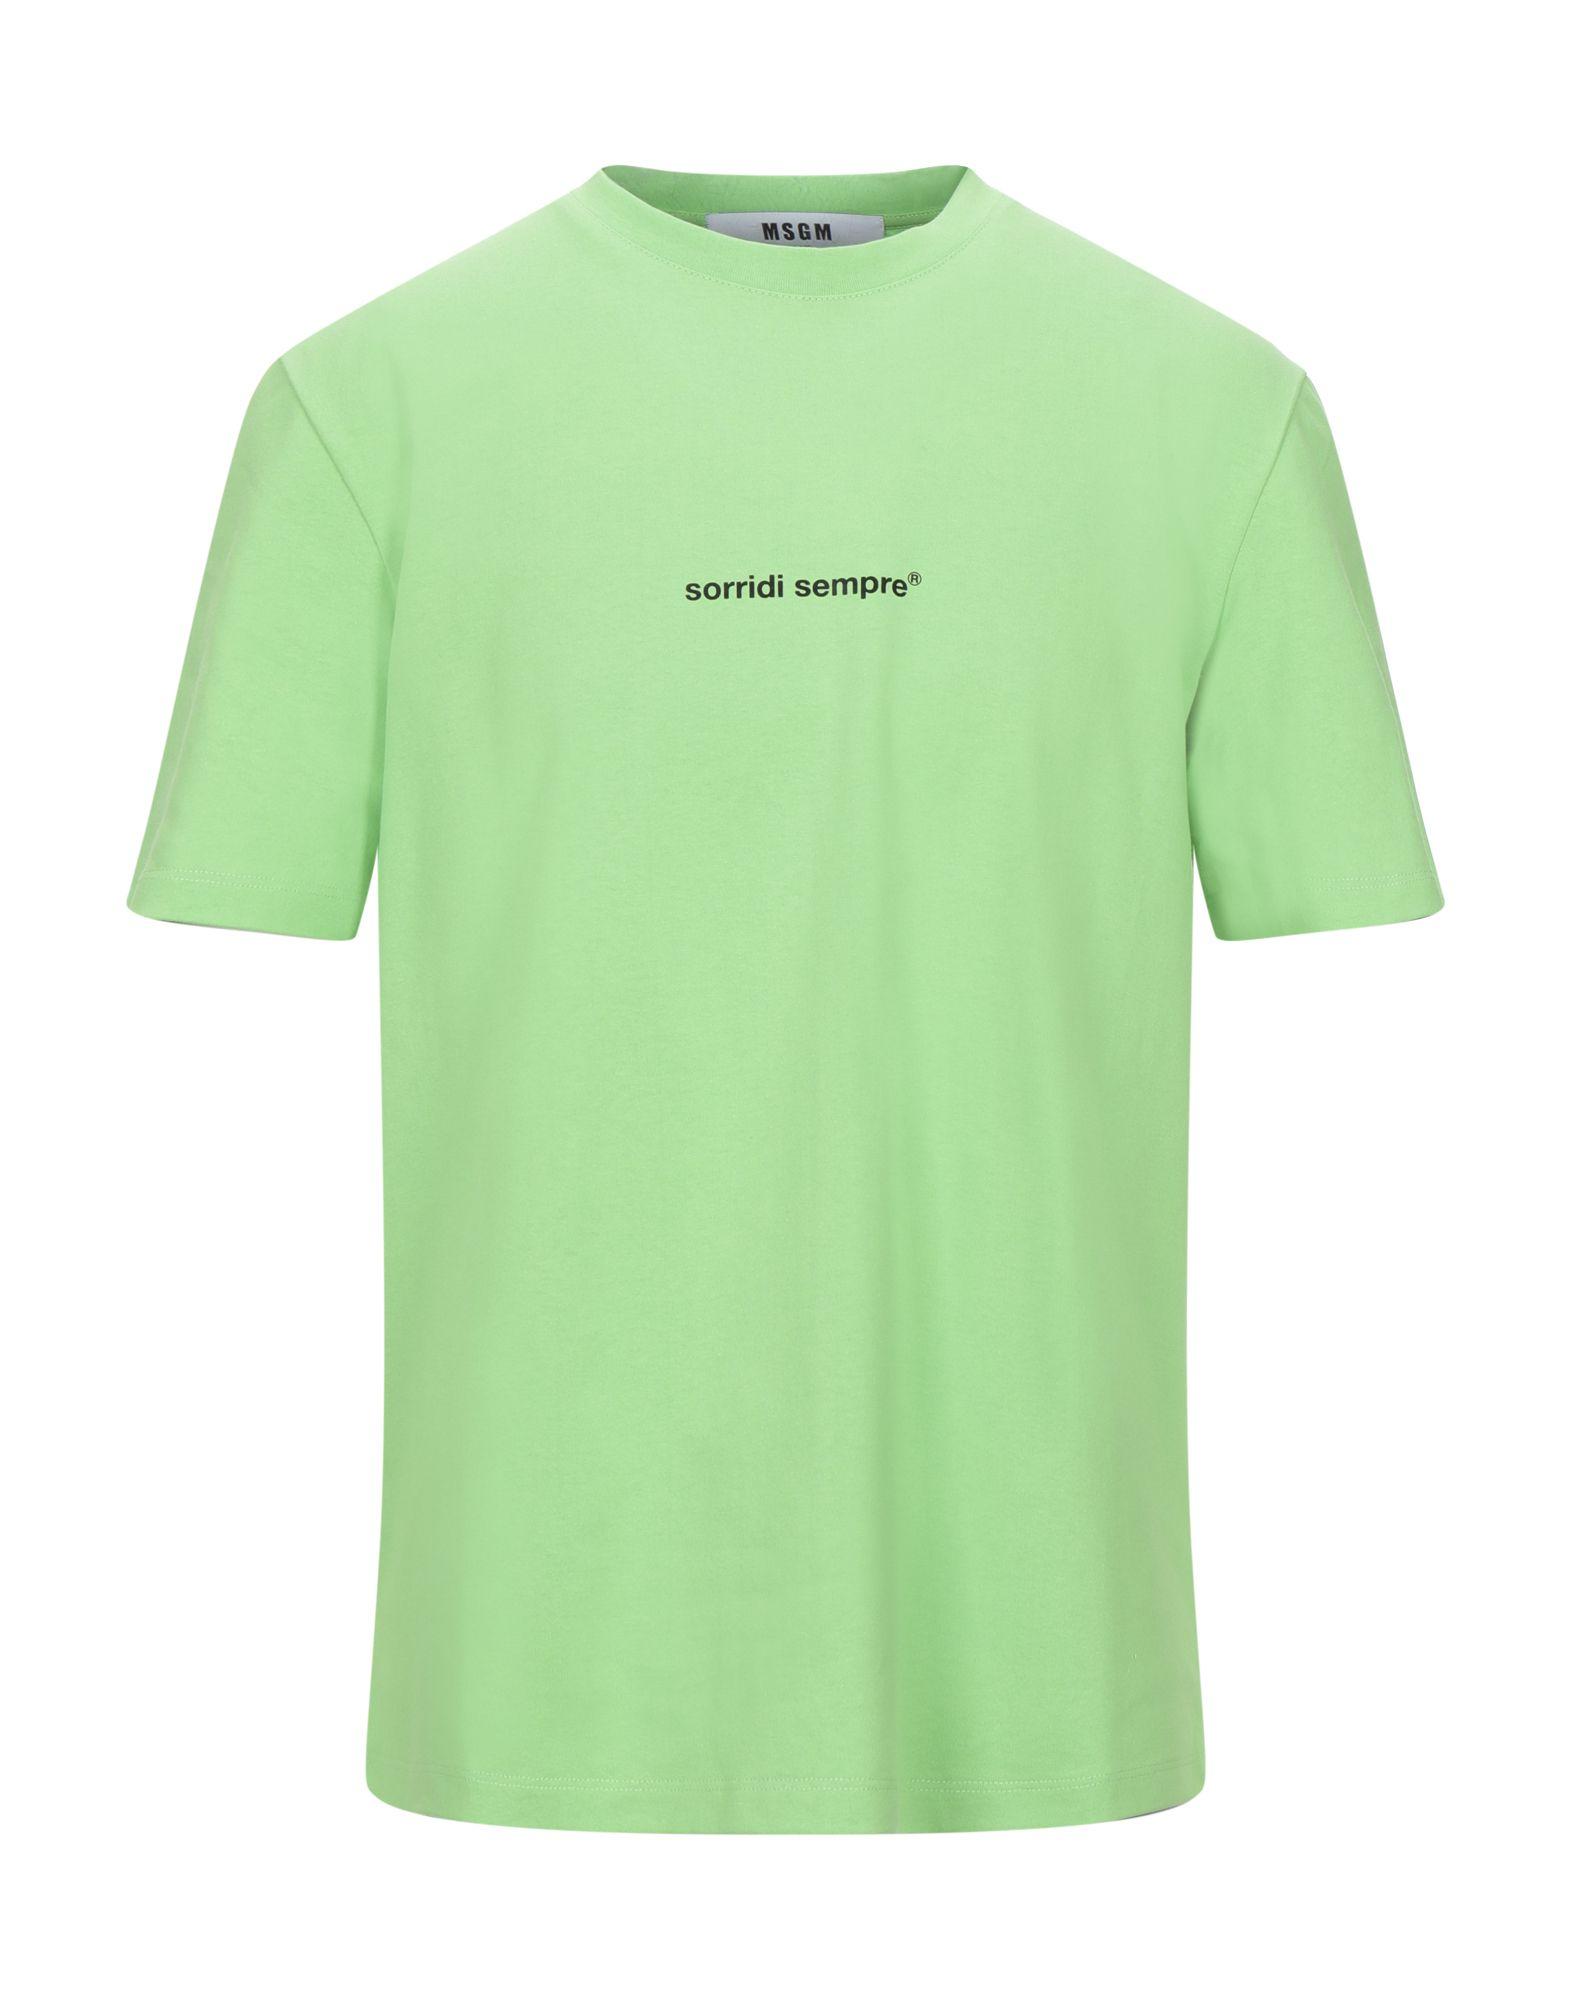 MSGM T-shirt in Light Green (Green) for Men - Lyst